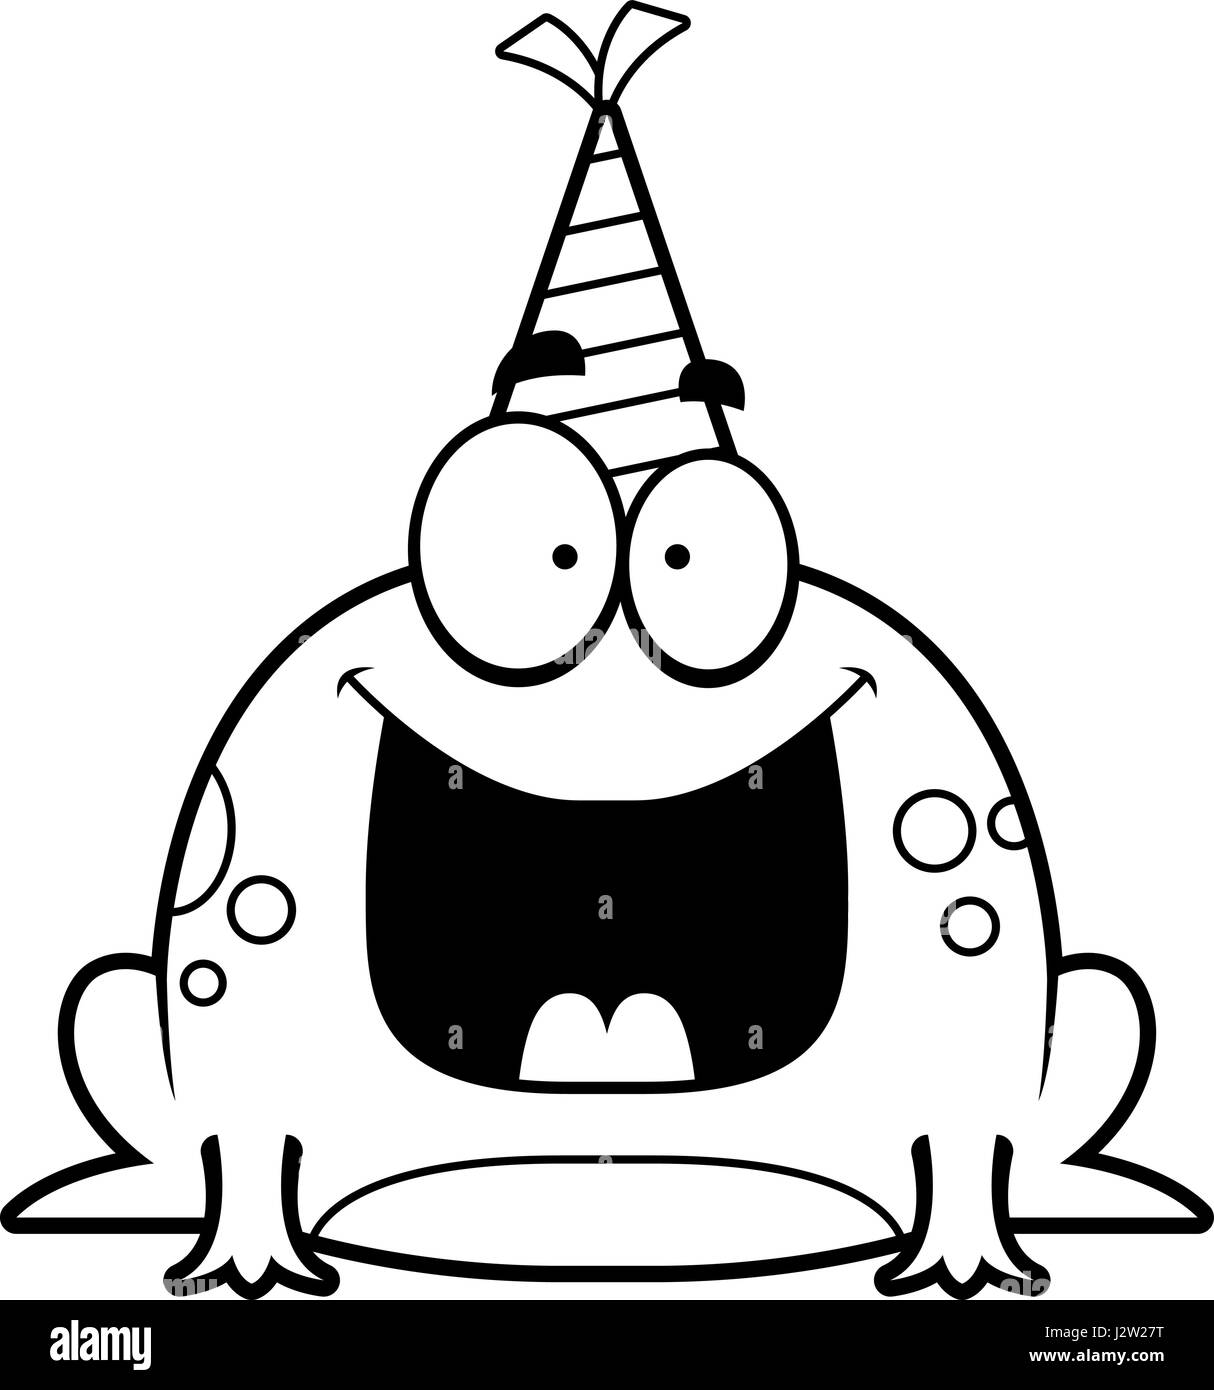 Illustration d'un dessin d'une grenouille avec un chapeau de fête à heureux  Image Vectorielle Stock - Alamy